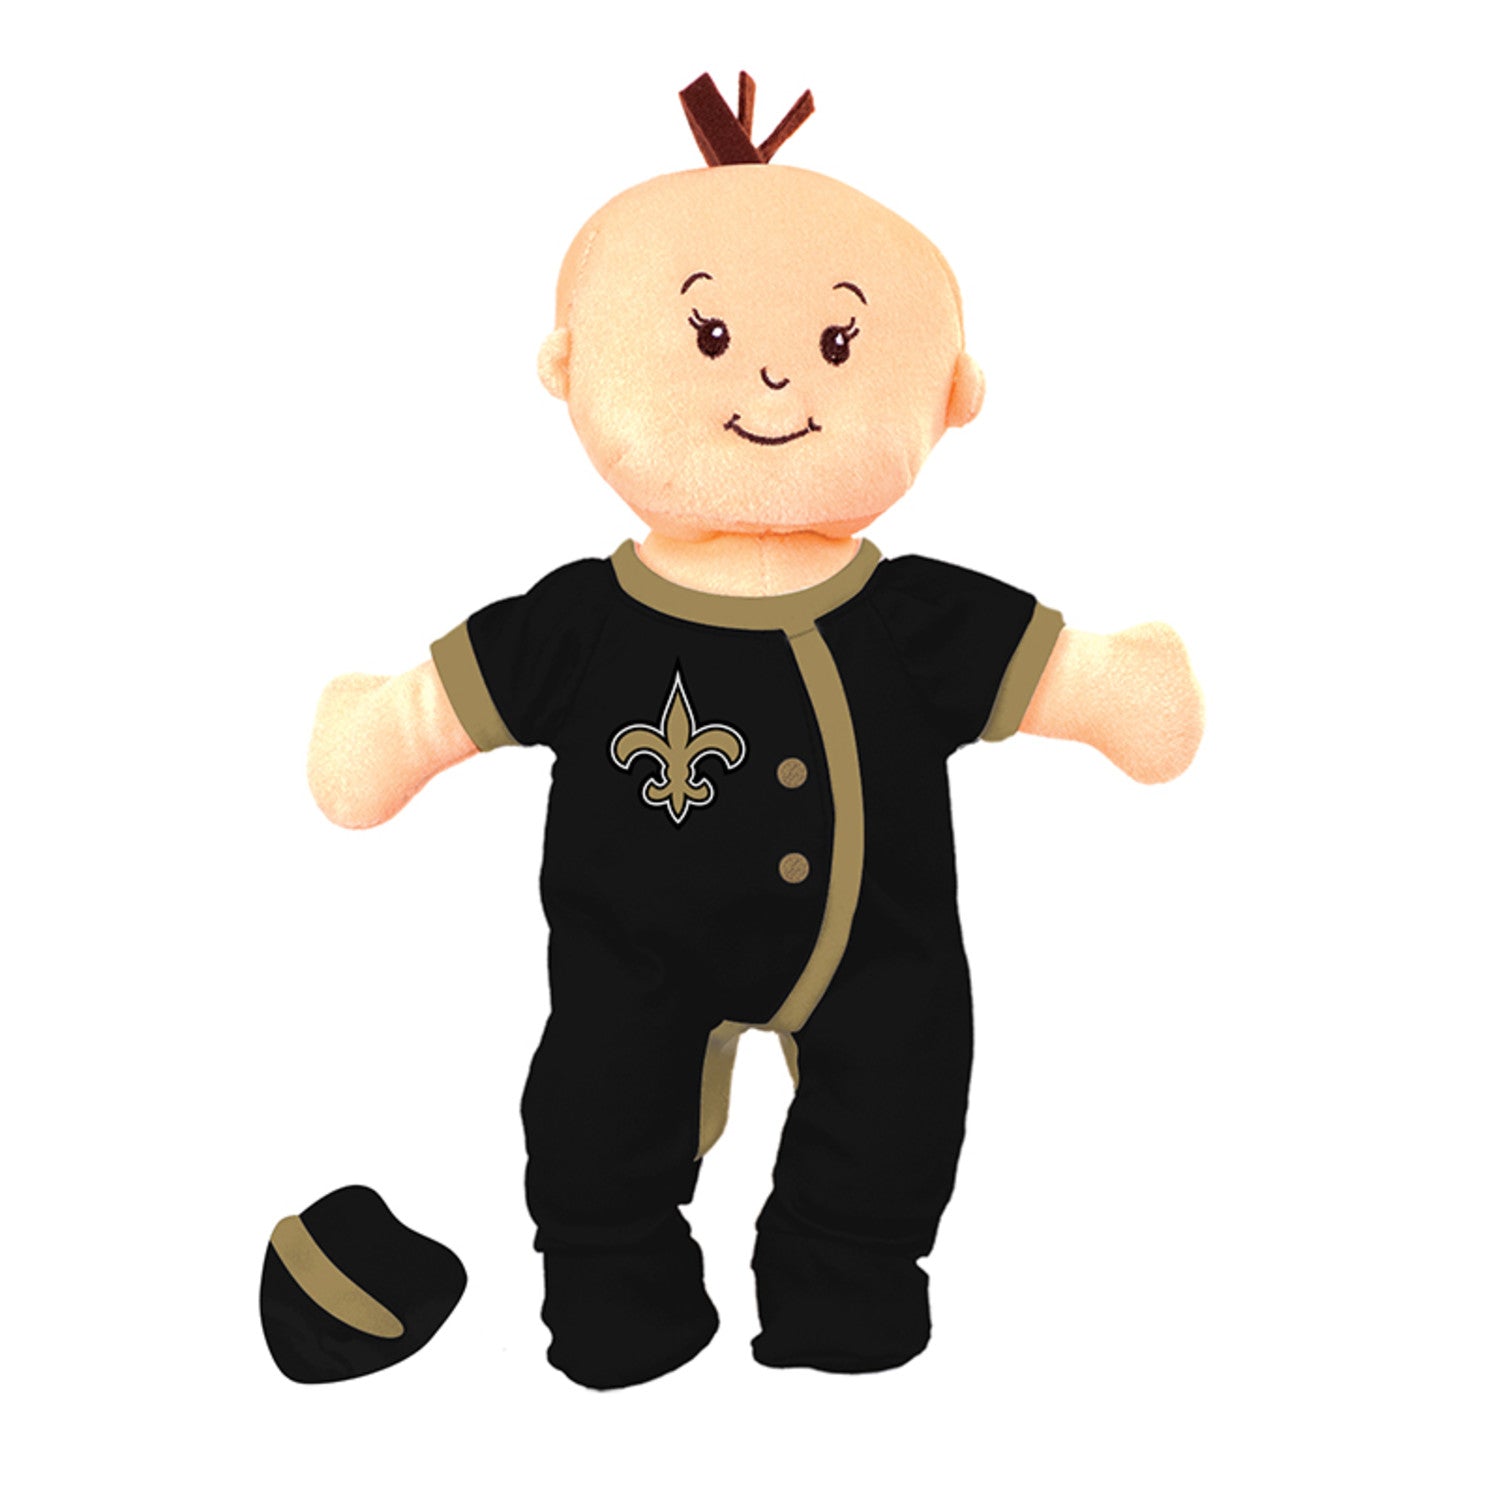 New Orleans Saints Baby Fan Doll